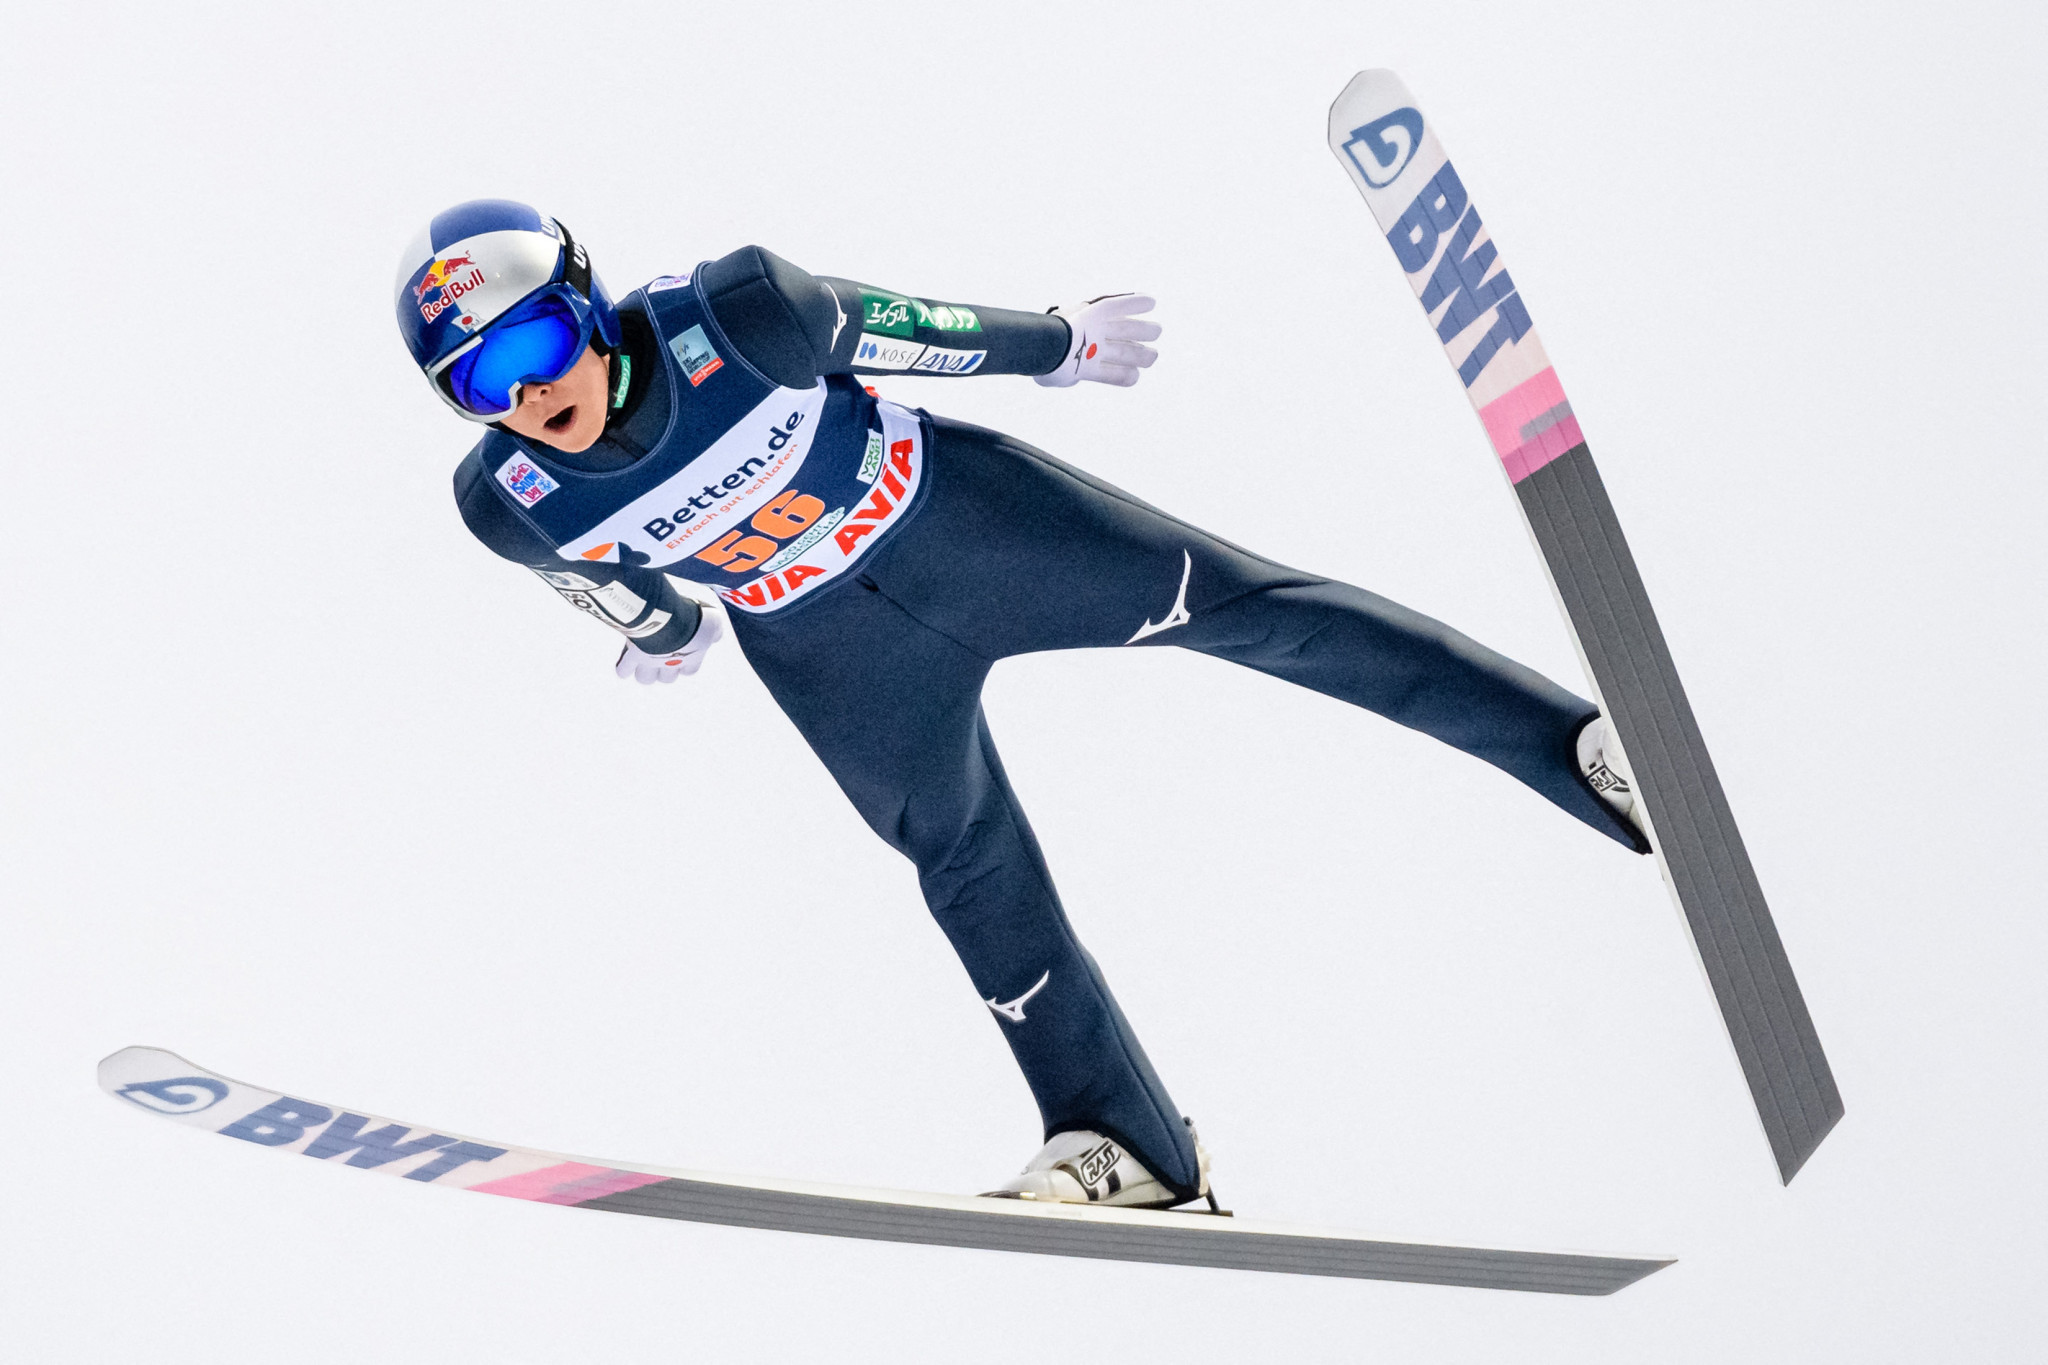 Kobayashi continues strong form to top qualifying at Ski Jumping World Cup